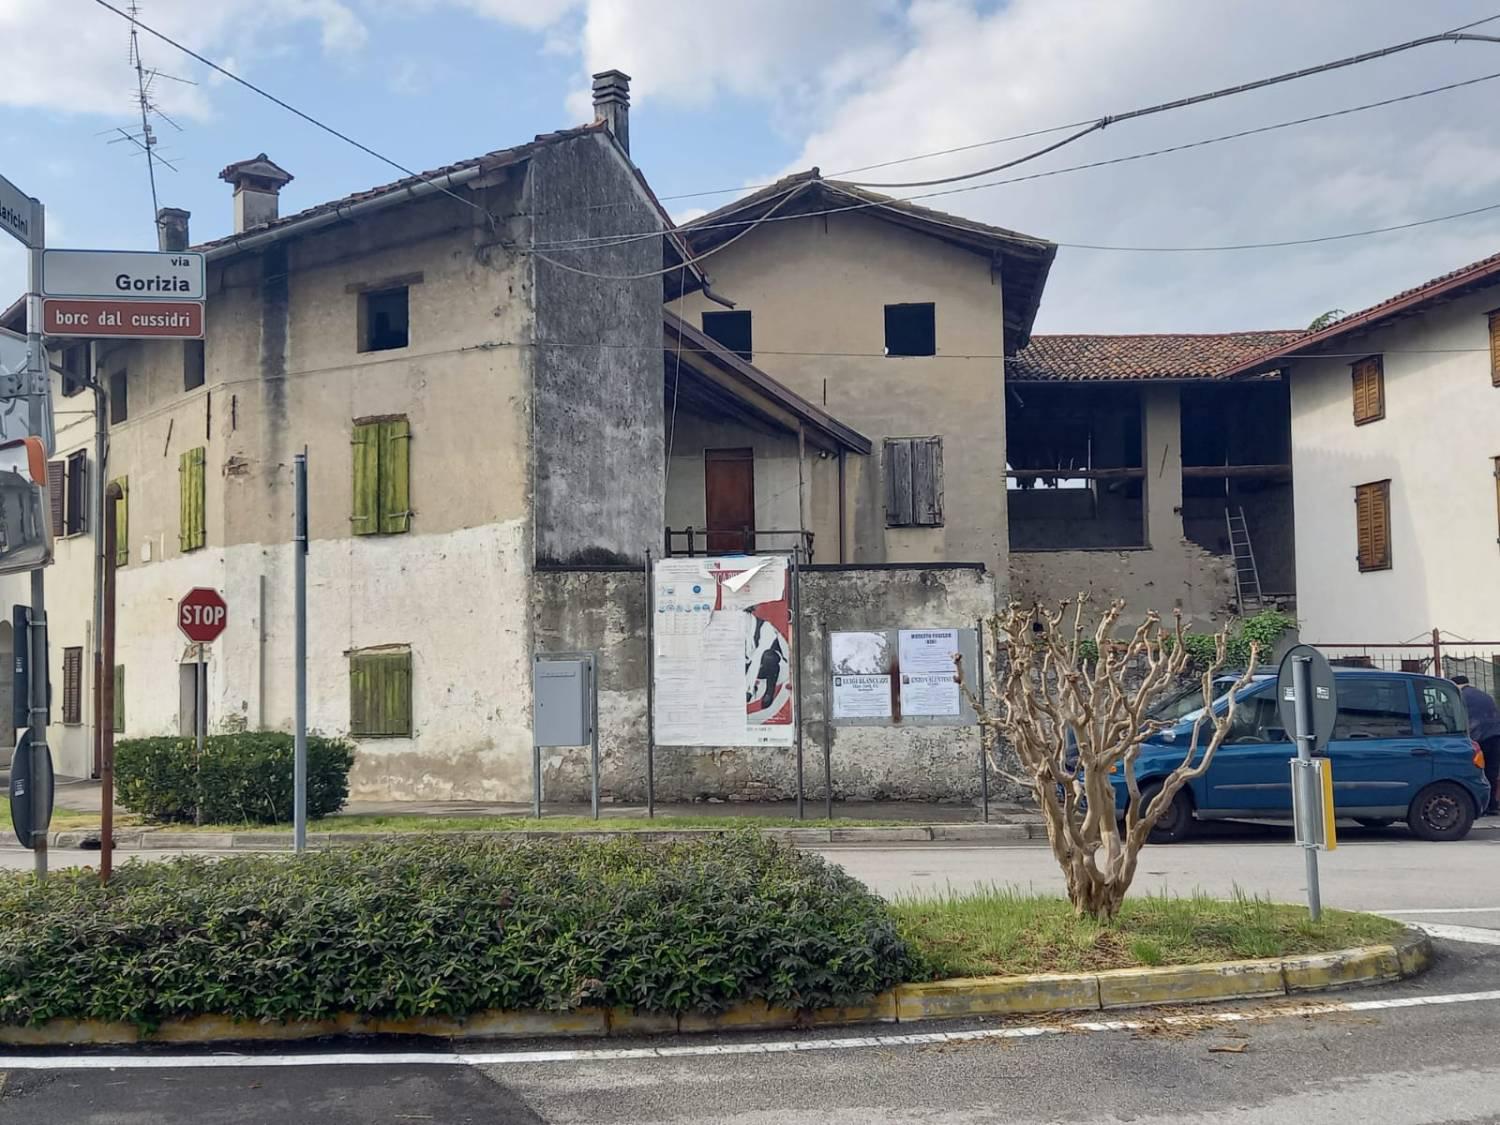 Rustico / Casale in vendita a Romans d'Isonzo, 10 locali, zona Zona: Versa, prezzo € 25.000 | CambioCasa.it